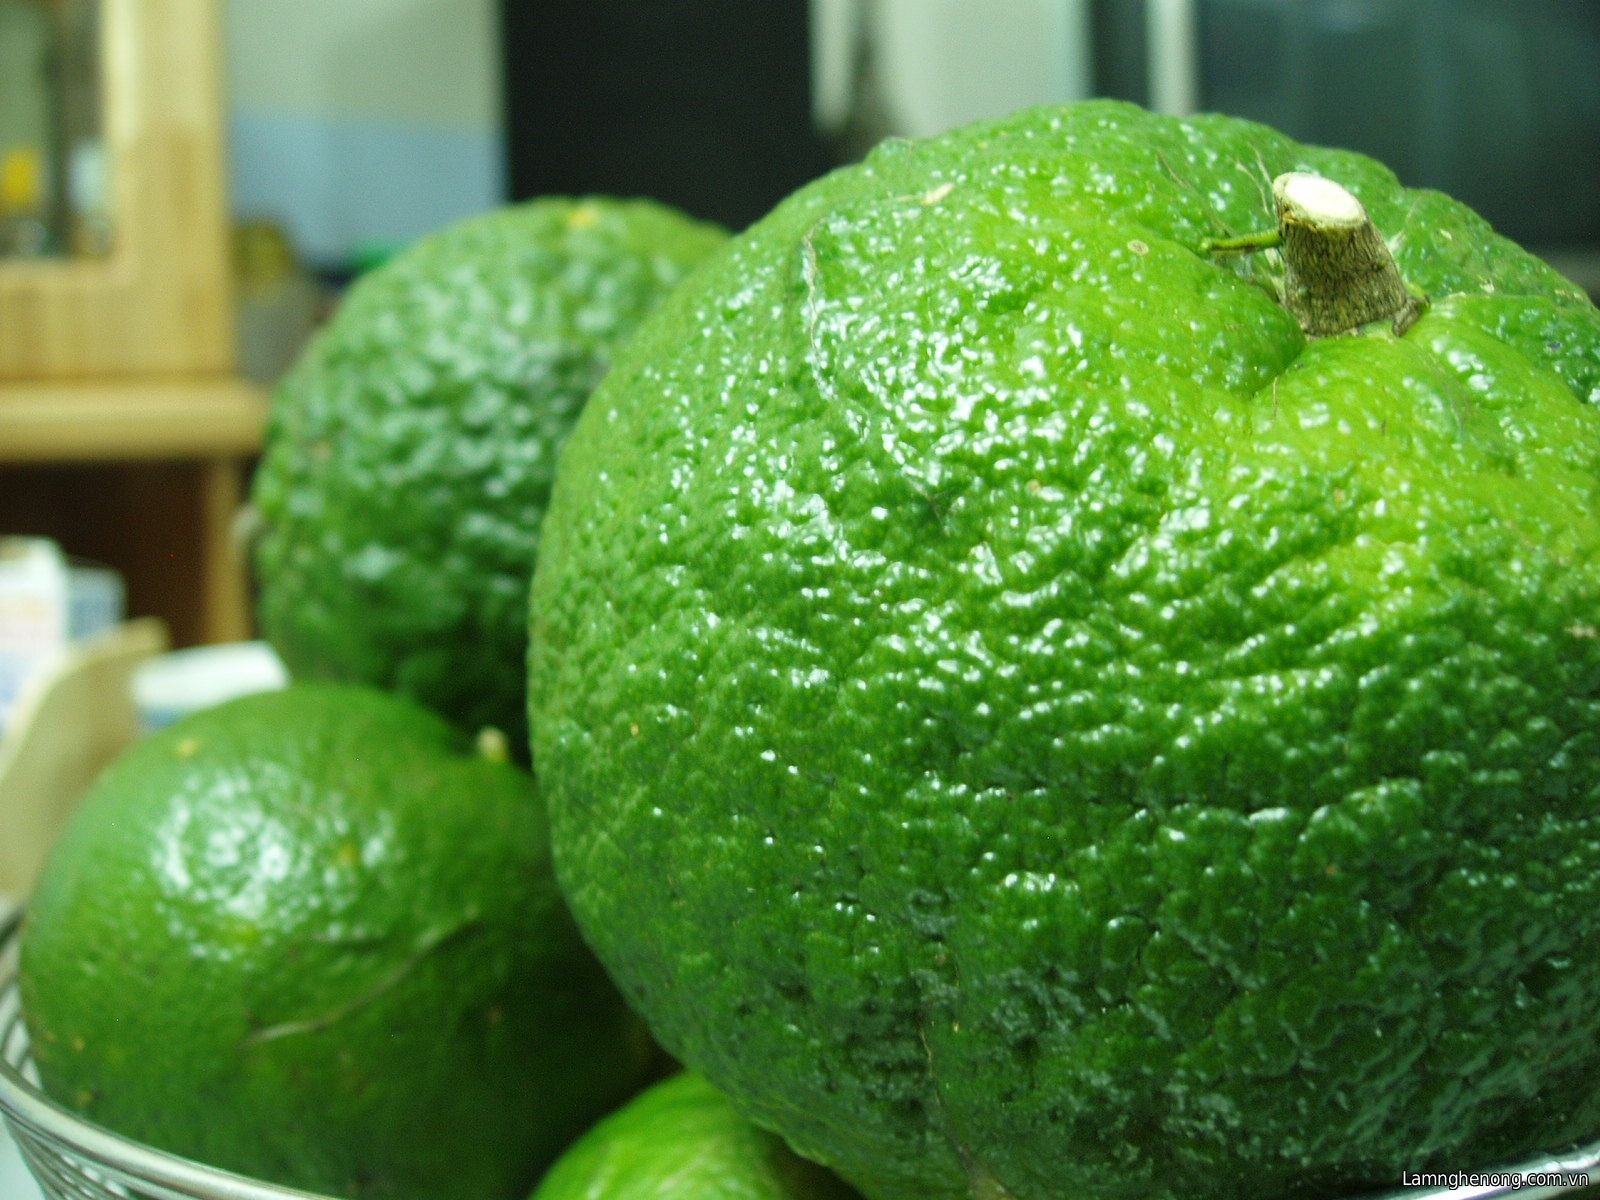 Фото зеленых фруктов. Померанец зеленый фрукт. Зелёный фрукт круглый. Фрукты зеленого цвета. Зелёный фрукт похожий на апельсин.